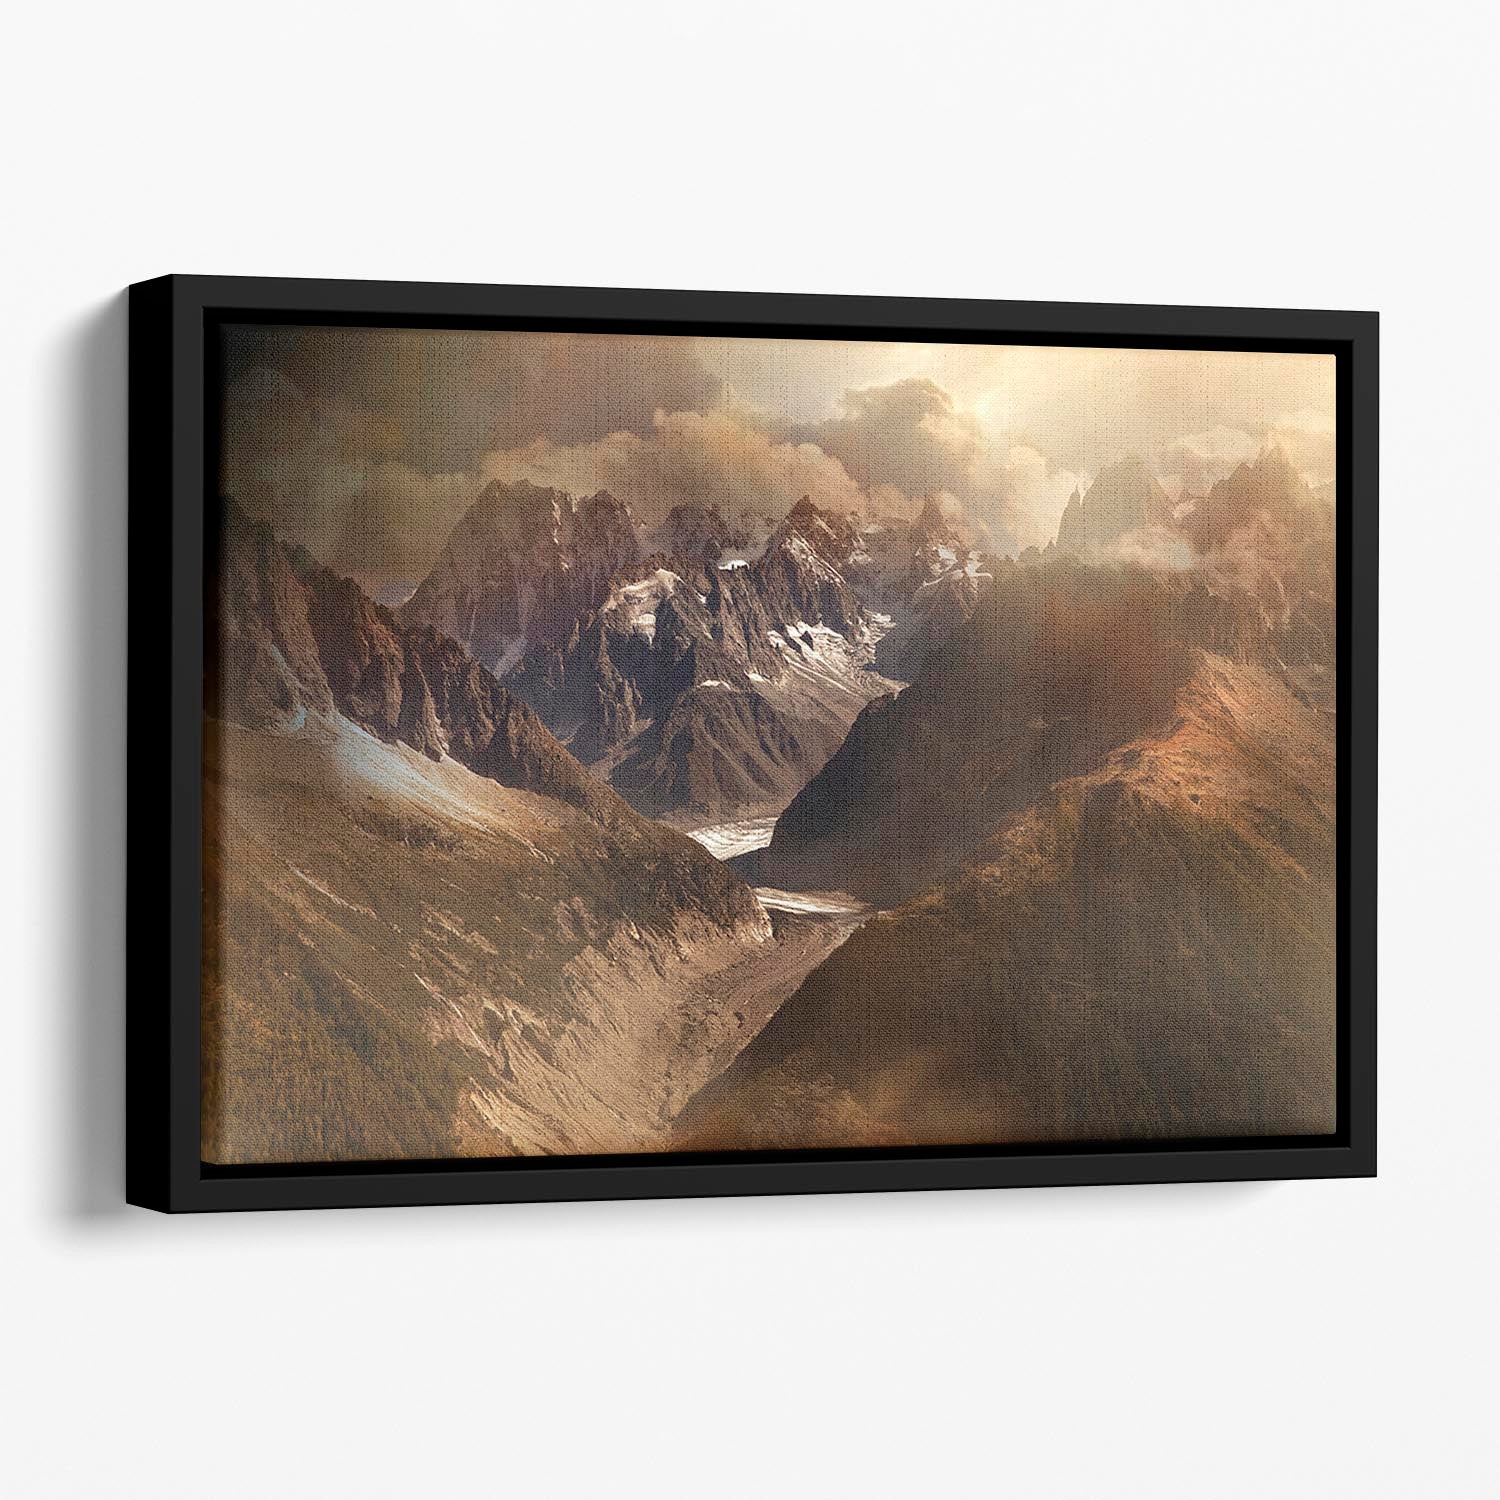 Mont Blanc Massiv Floating Framed Canvas - Canvas Art Rocks - 1